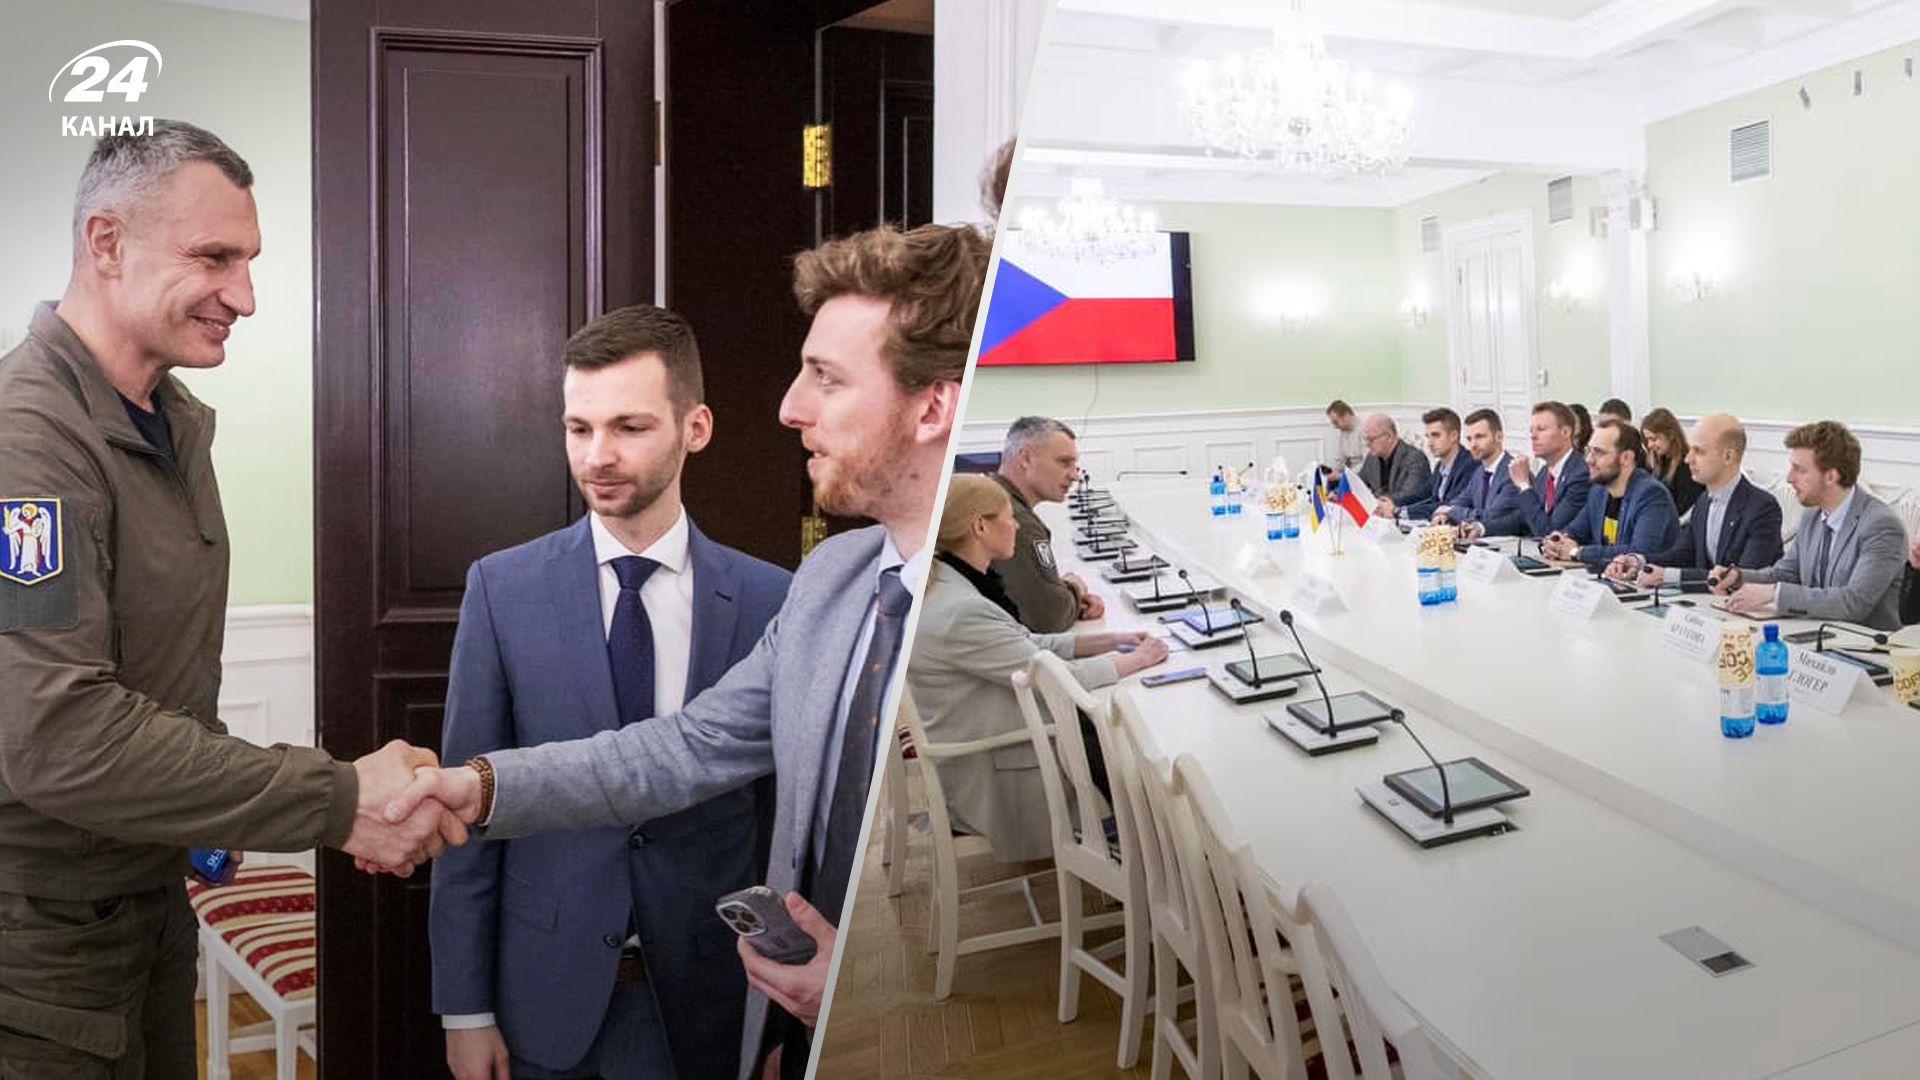 Говорили о поддержке в реабилитации воинов, – Кличко о встрече с чешскими чиновниками